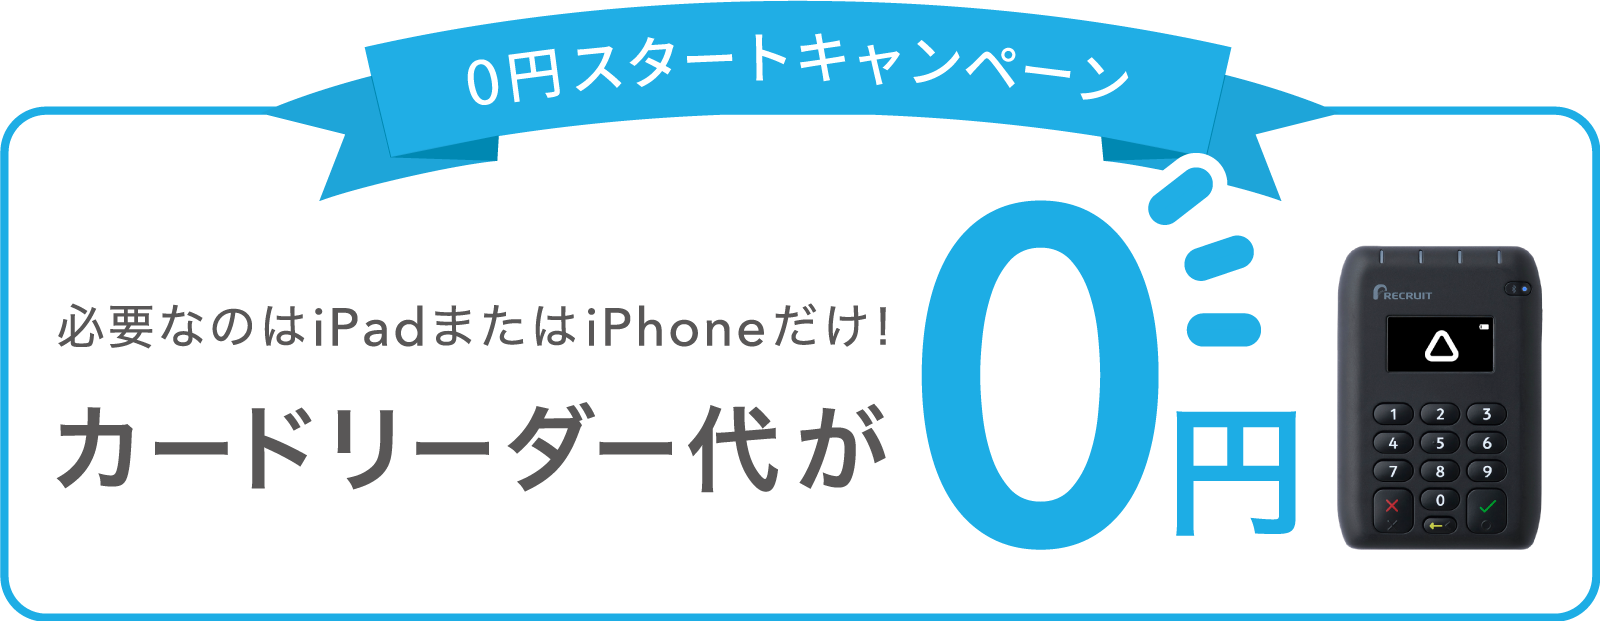 必要なのはiPadまたはiPhoneだけ！ 0円スタートキャンペーン カードリーダー代が0円